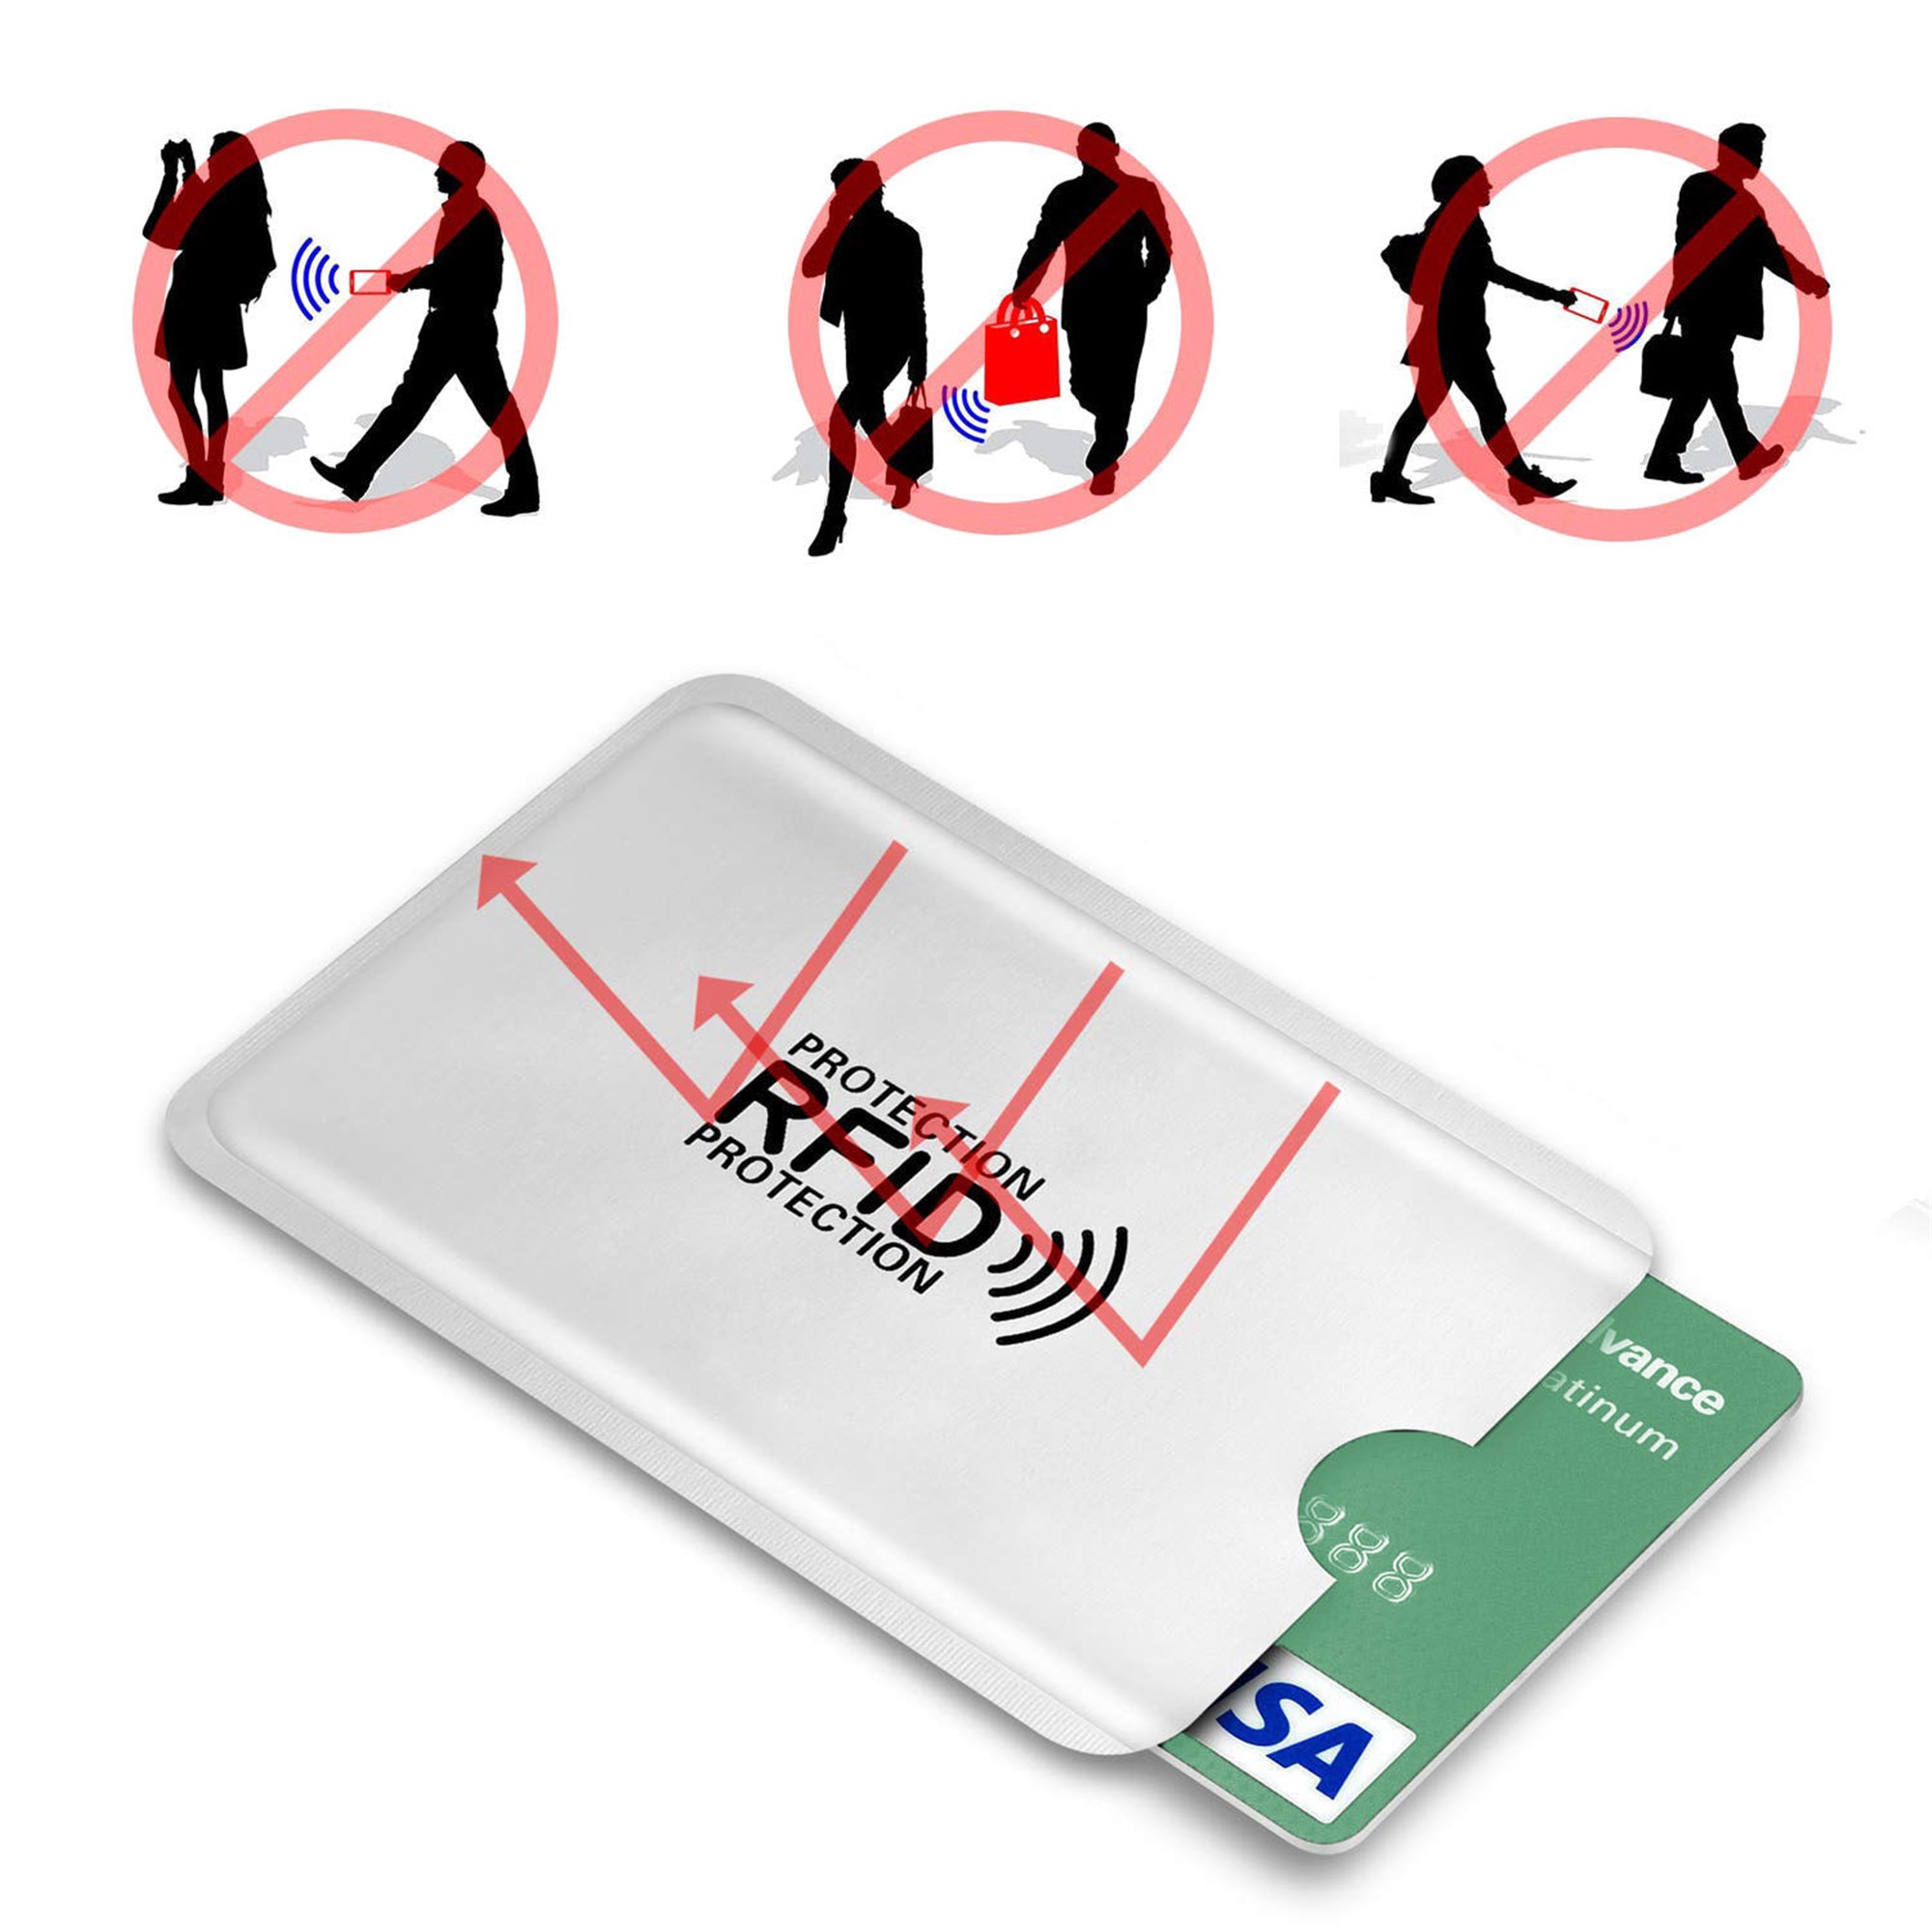 Etui de protection RFID CAO pour passeport